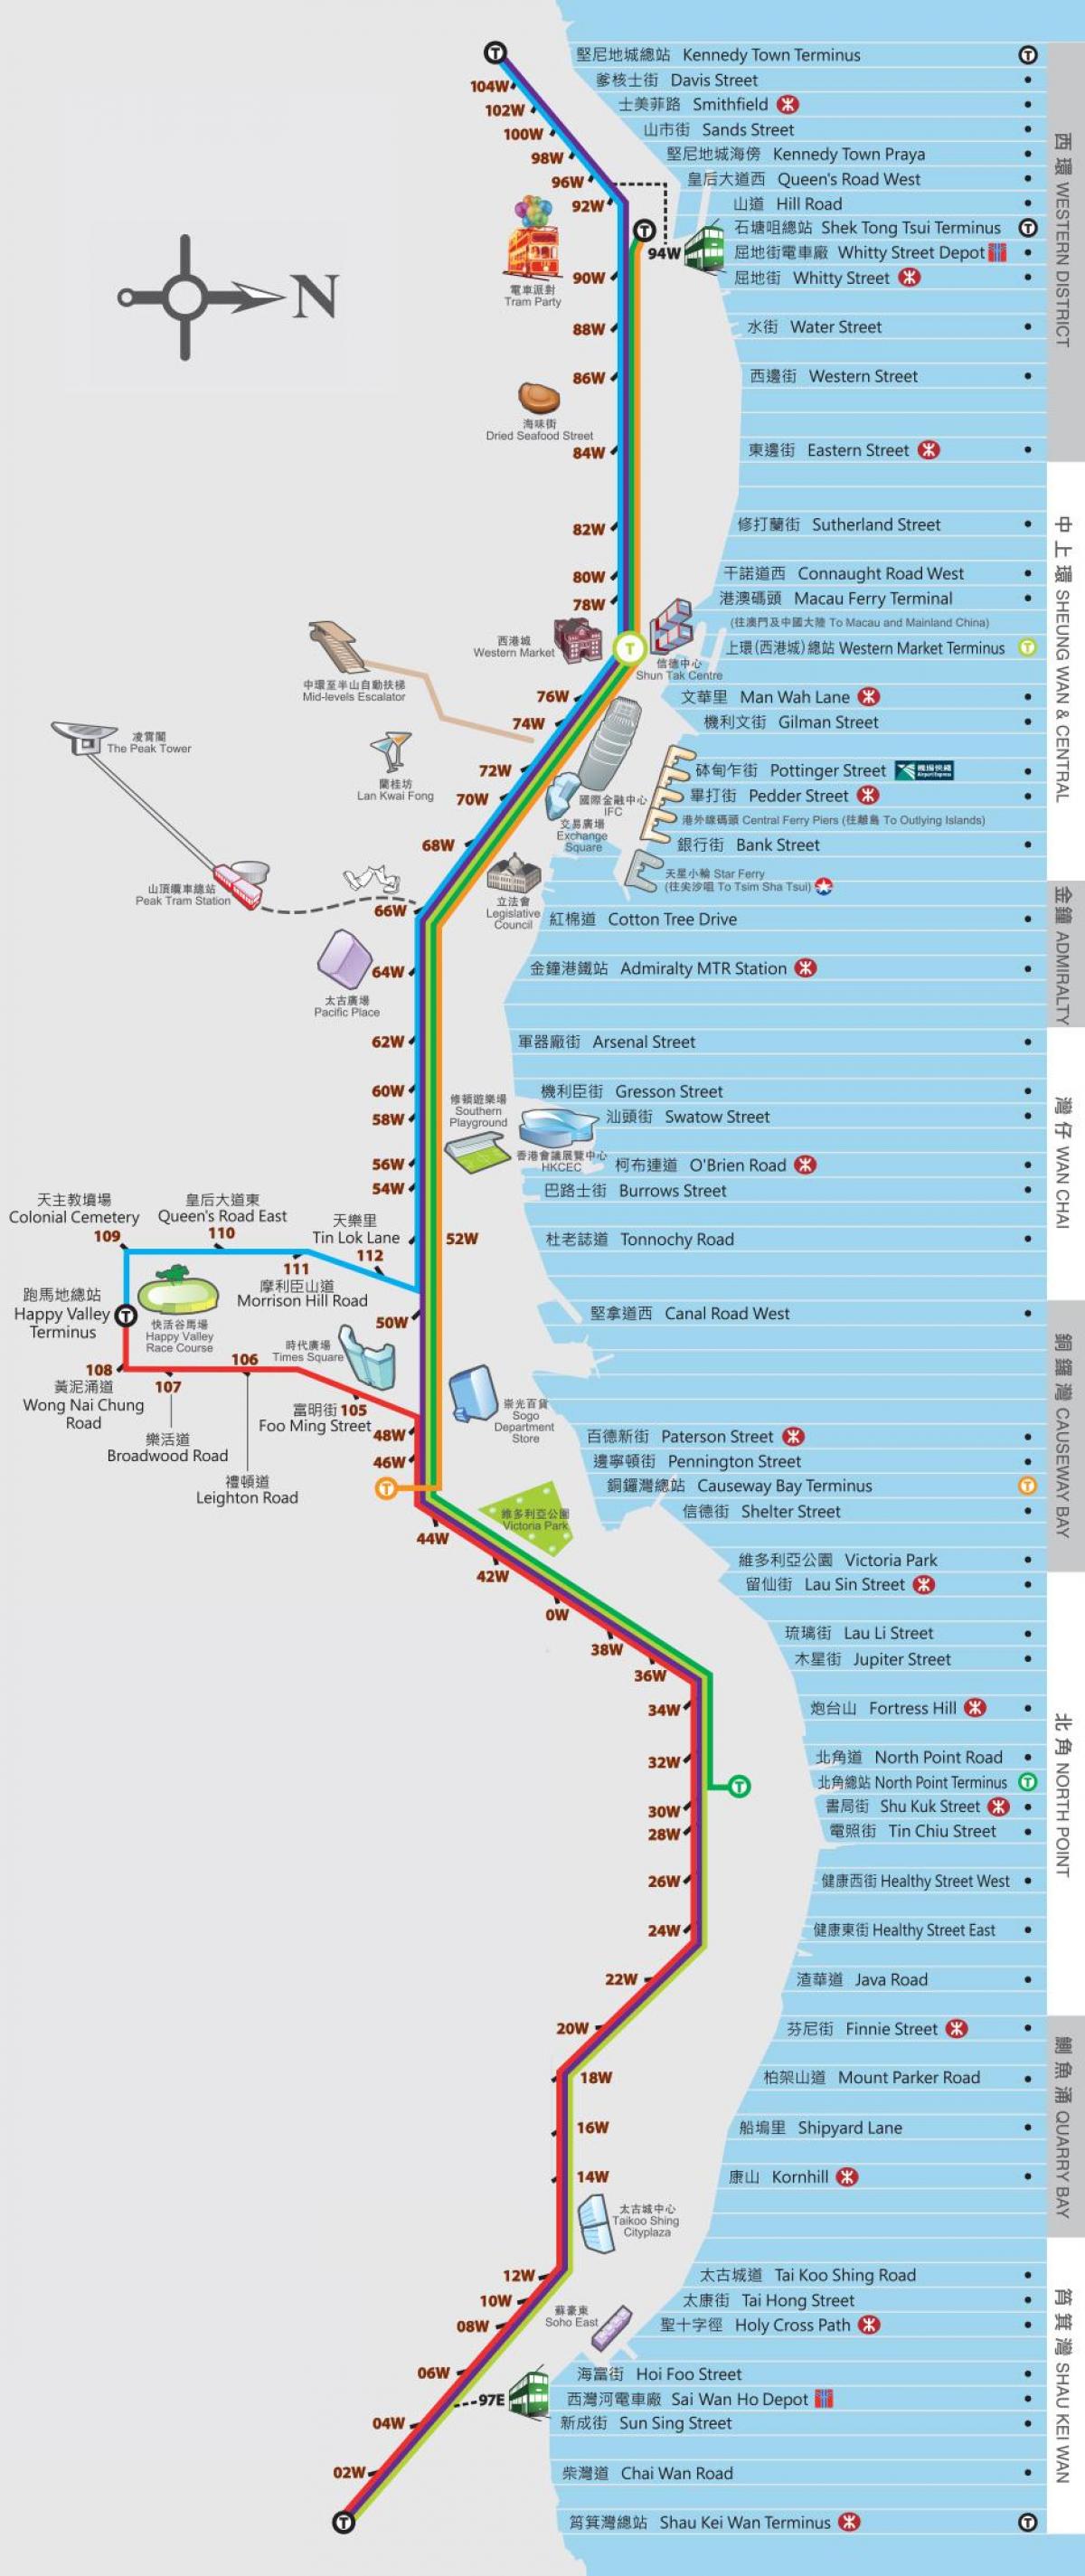 Hong Kong ding ding tramvai hartă